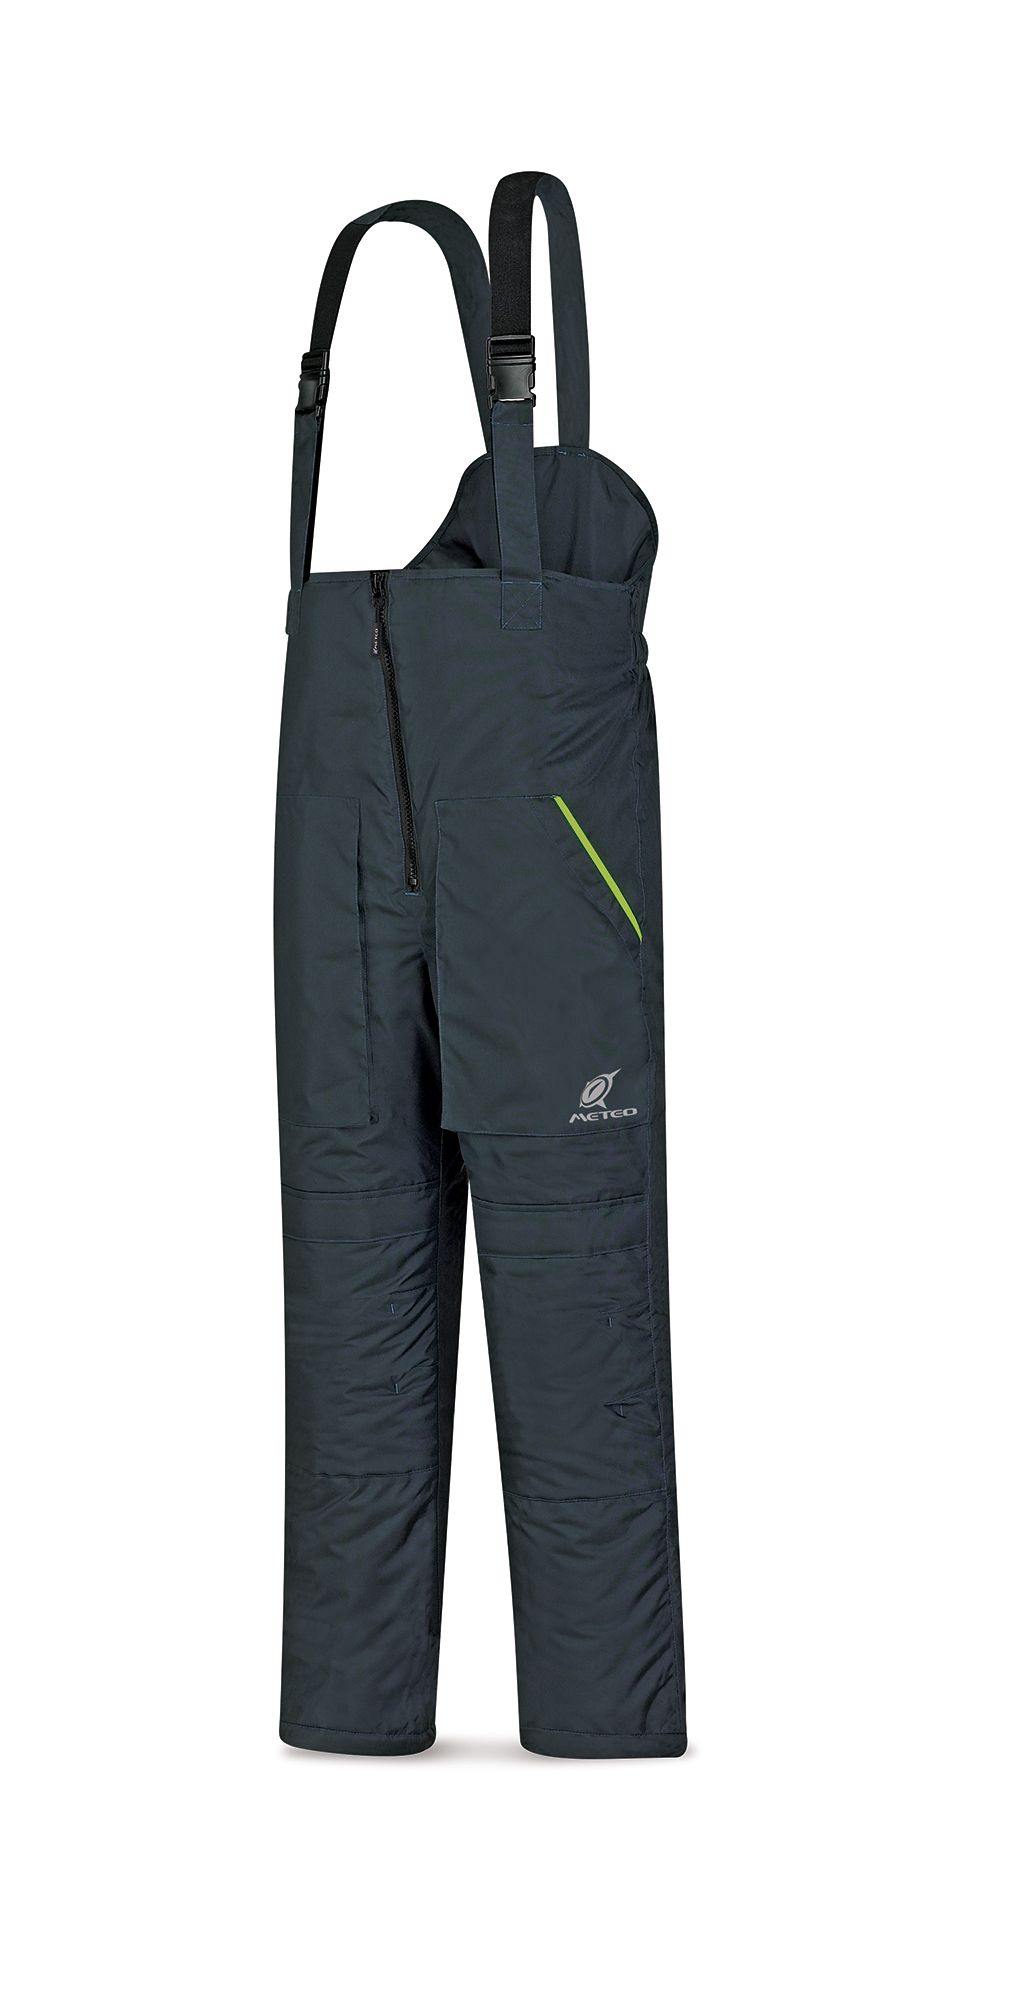 288-PA342 Abrigo y lluvia Pantalones Pantalón certificado para frío modelo JUNO azul marino 700 gr. EN342